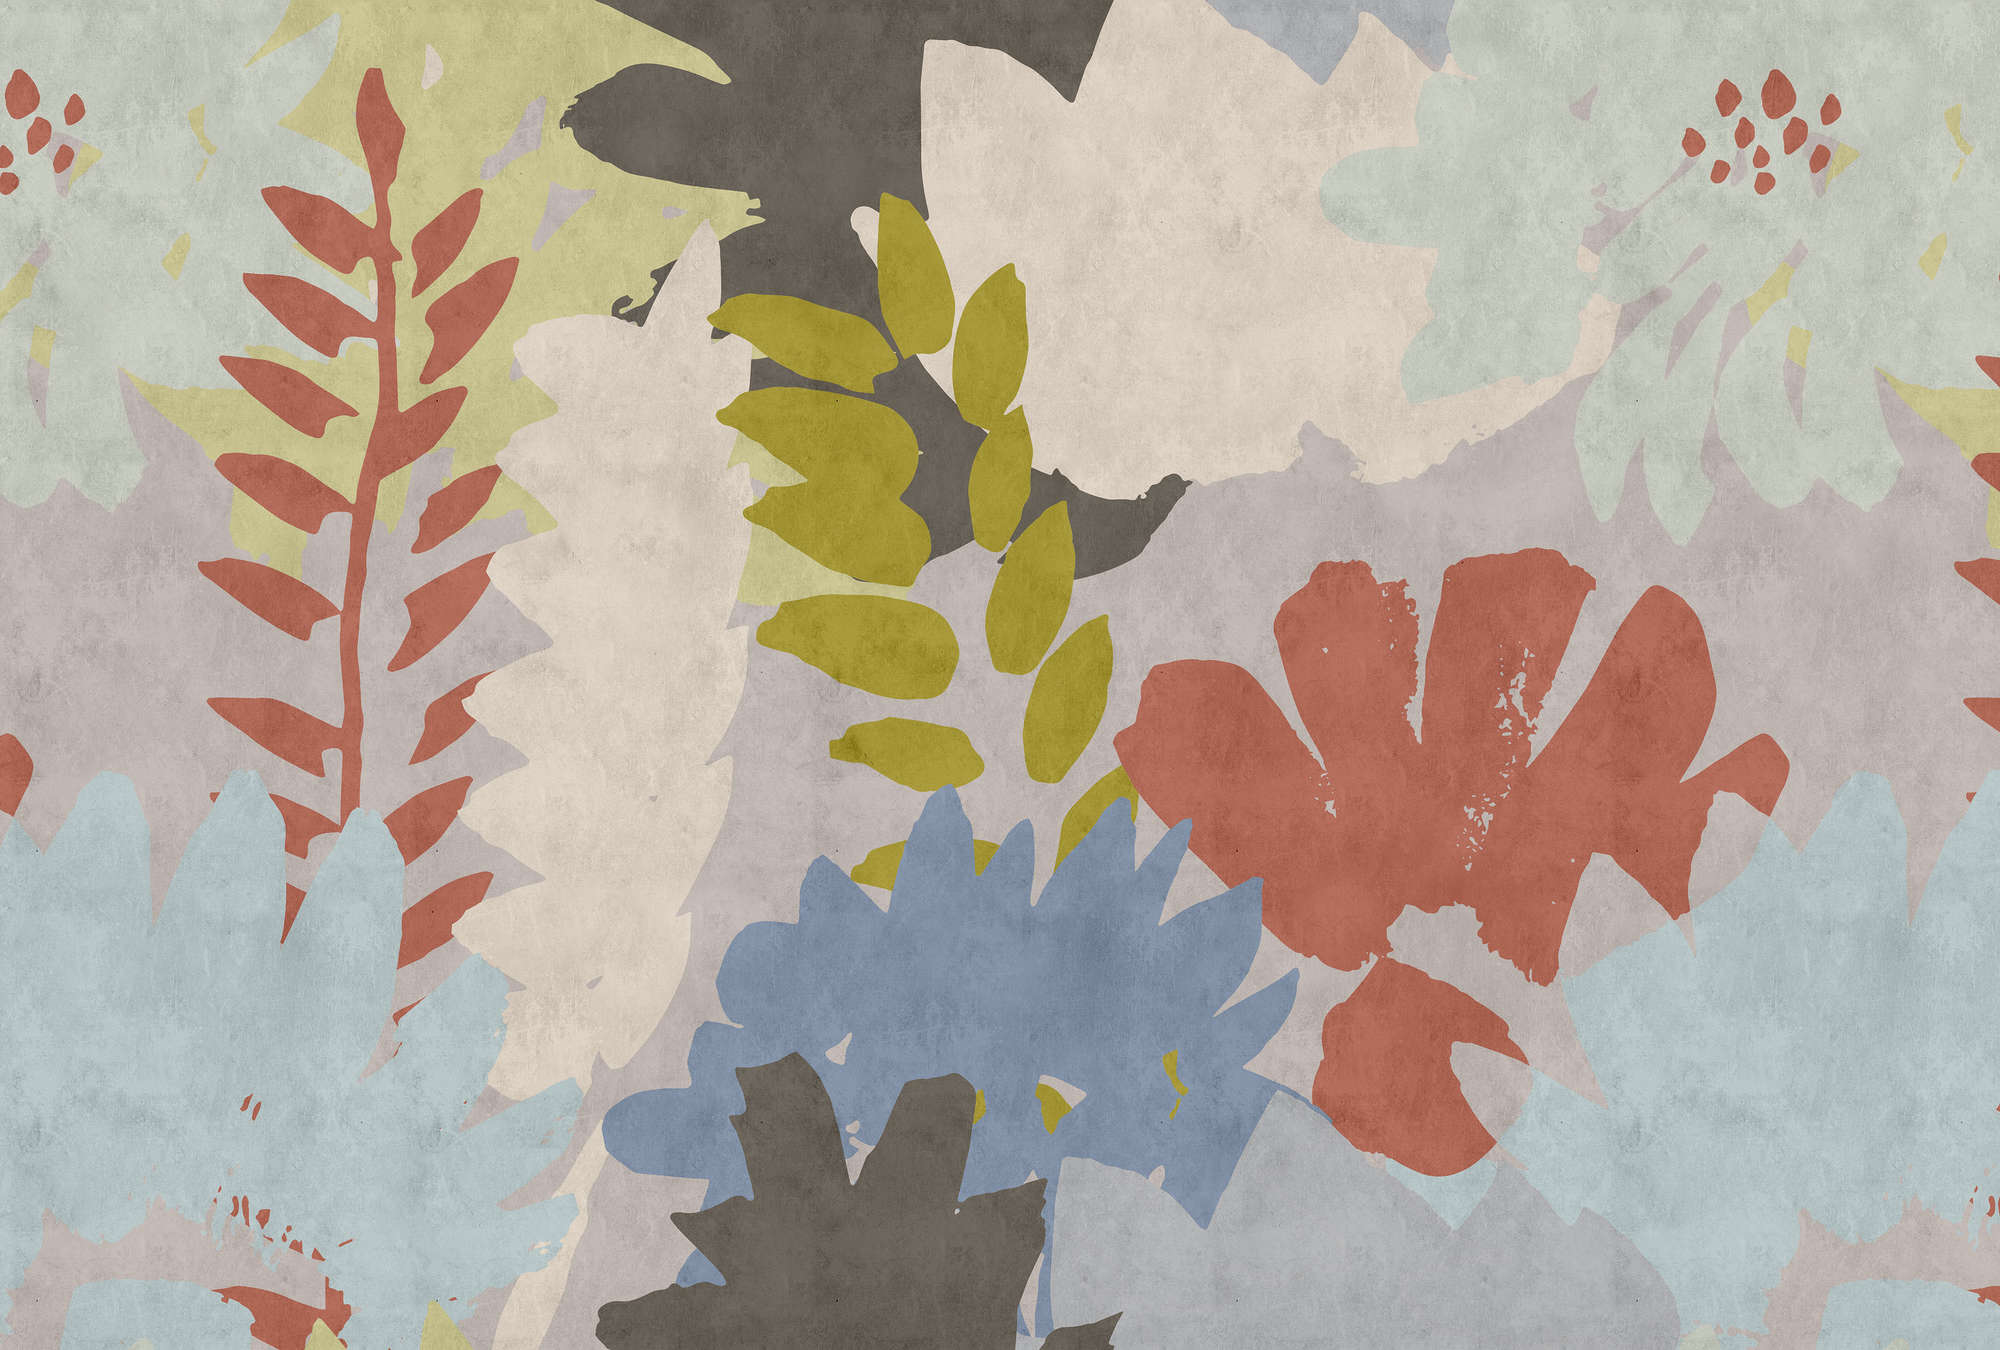             Collage Floral 3 - Papel pintado fotográfico abstracto en estructura de papel secante con motivo de hojas - Azul, Crema | Tejido sin tejer liso mate
        